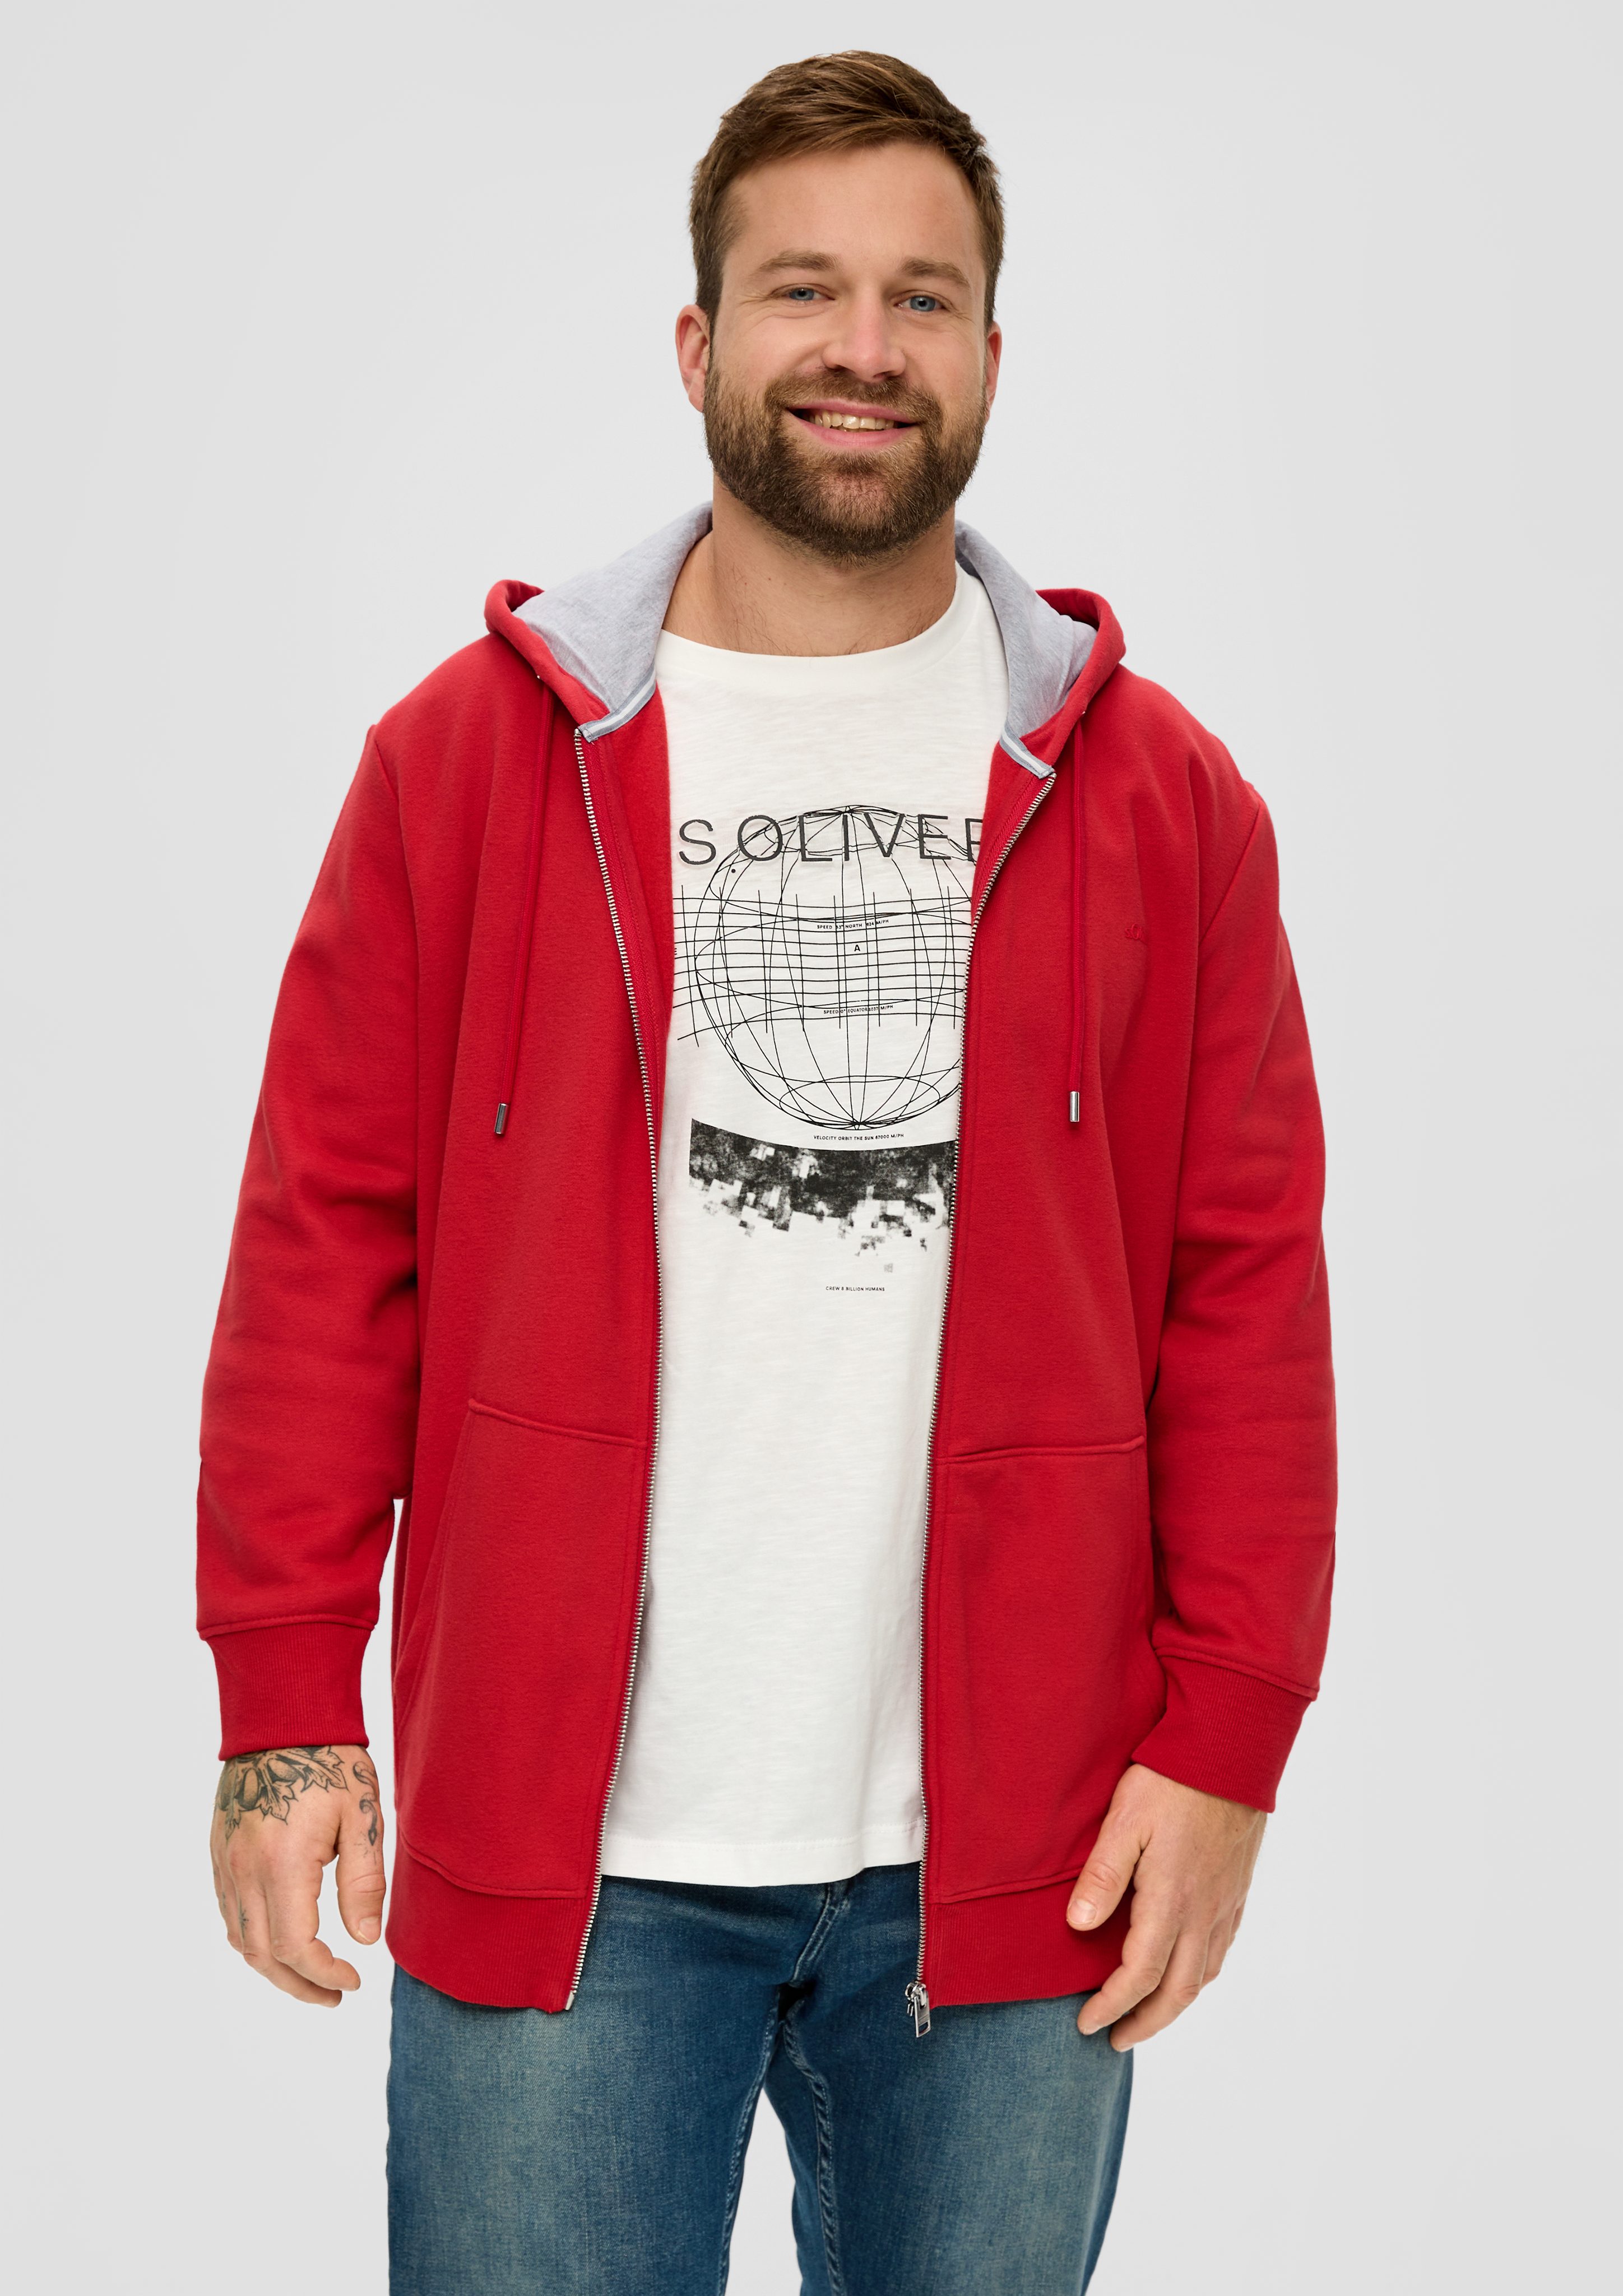 in s.Oliver Baumwollmix weicher Qualität, Allwetterjacke Kapuze Sweatshirt-Jacke Logo, aus Sweatware, mit